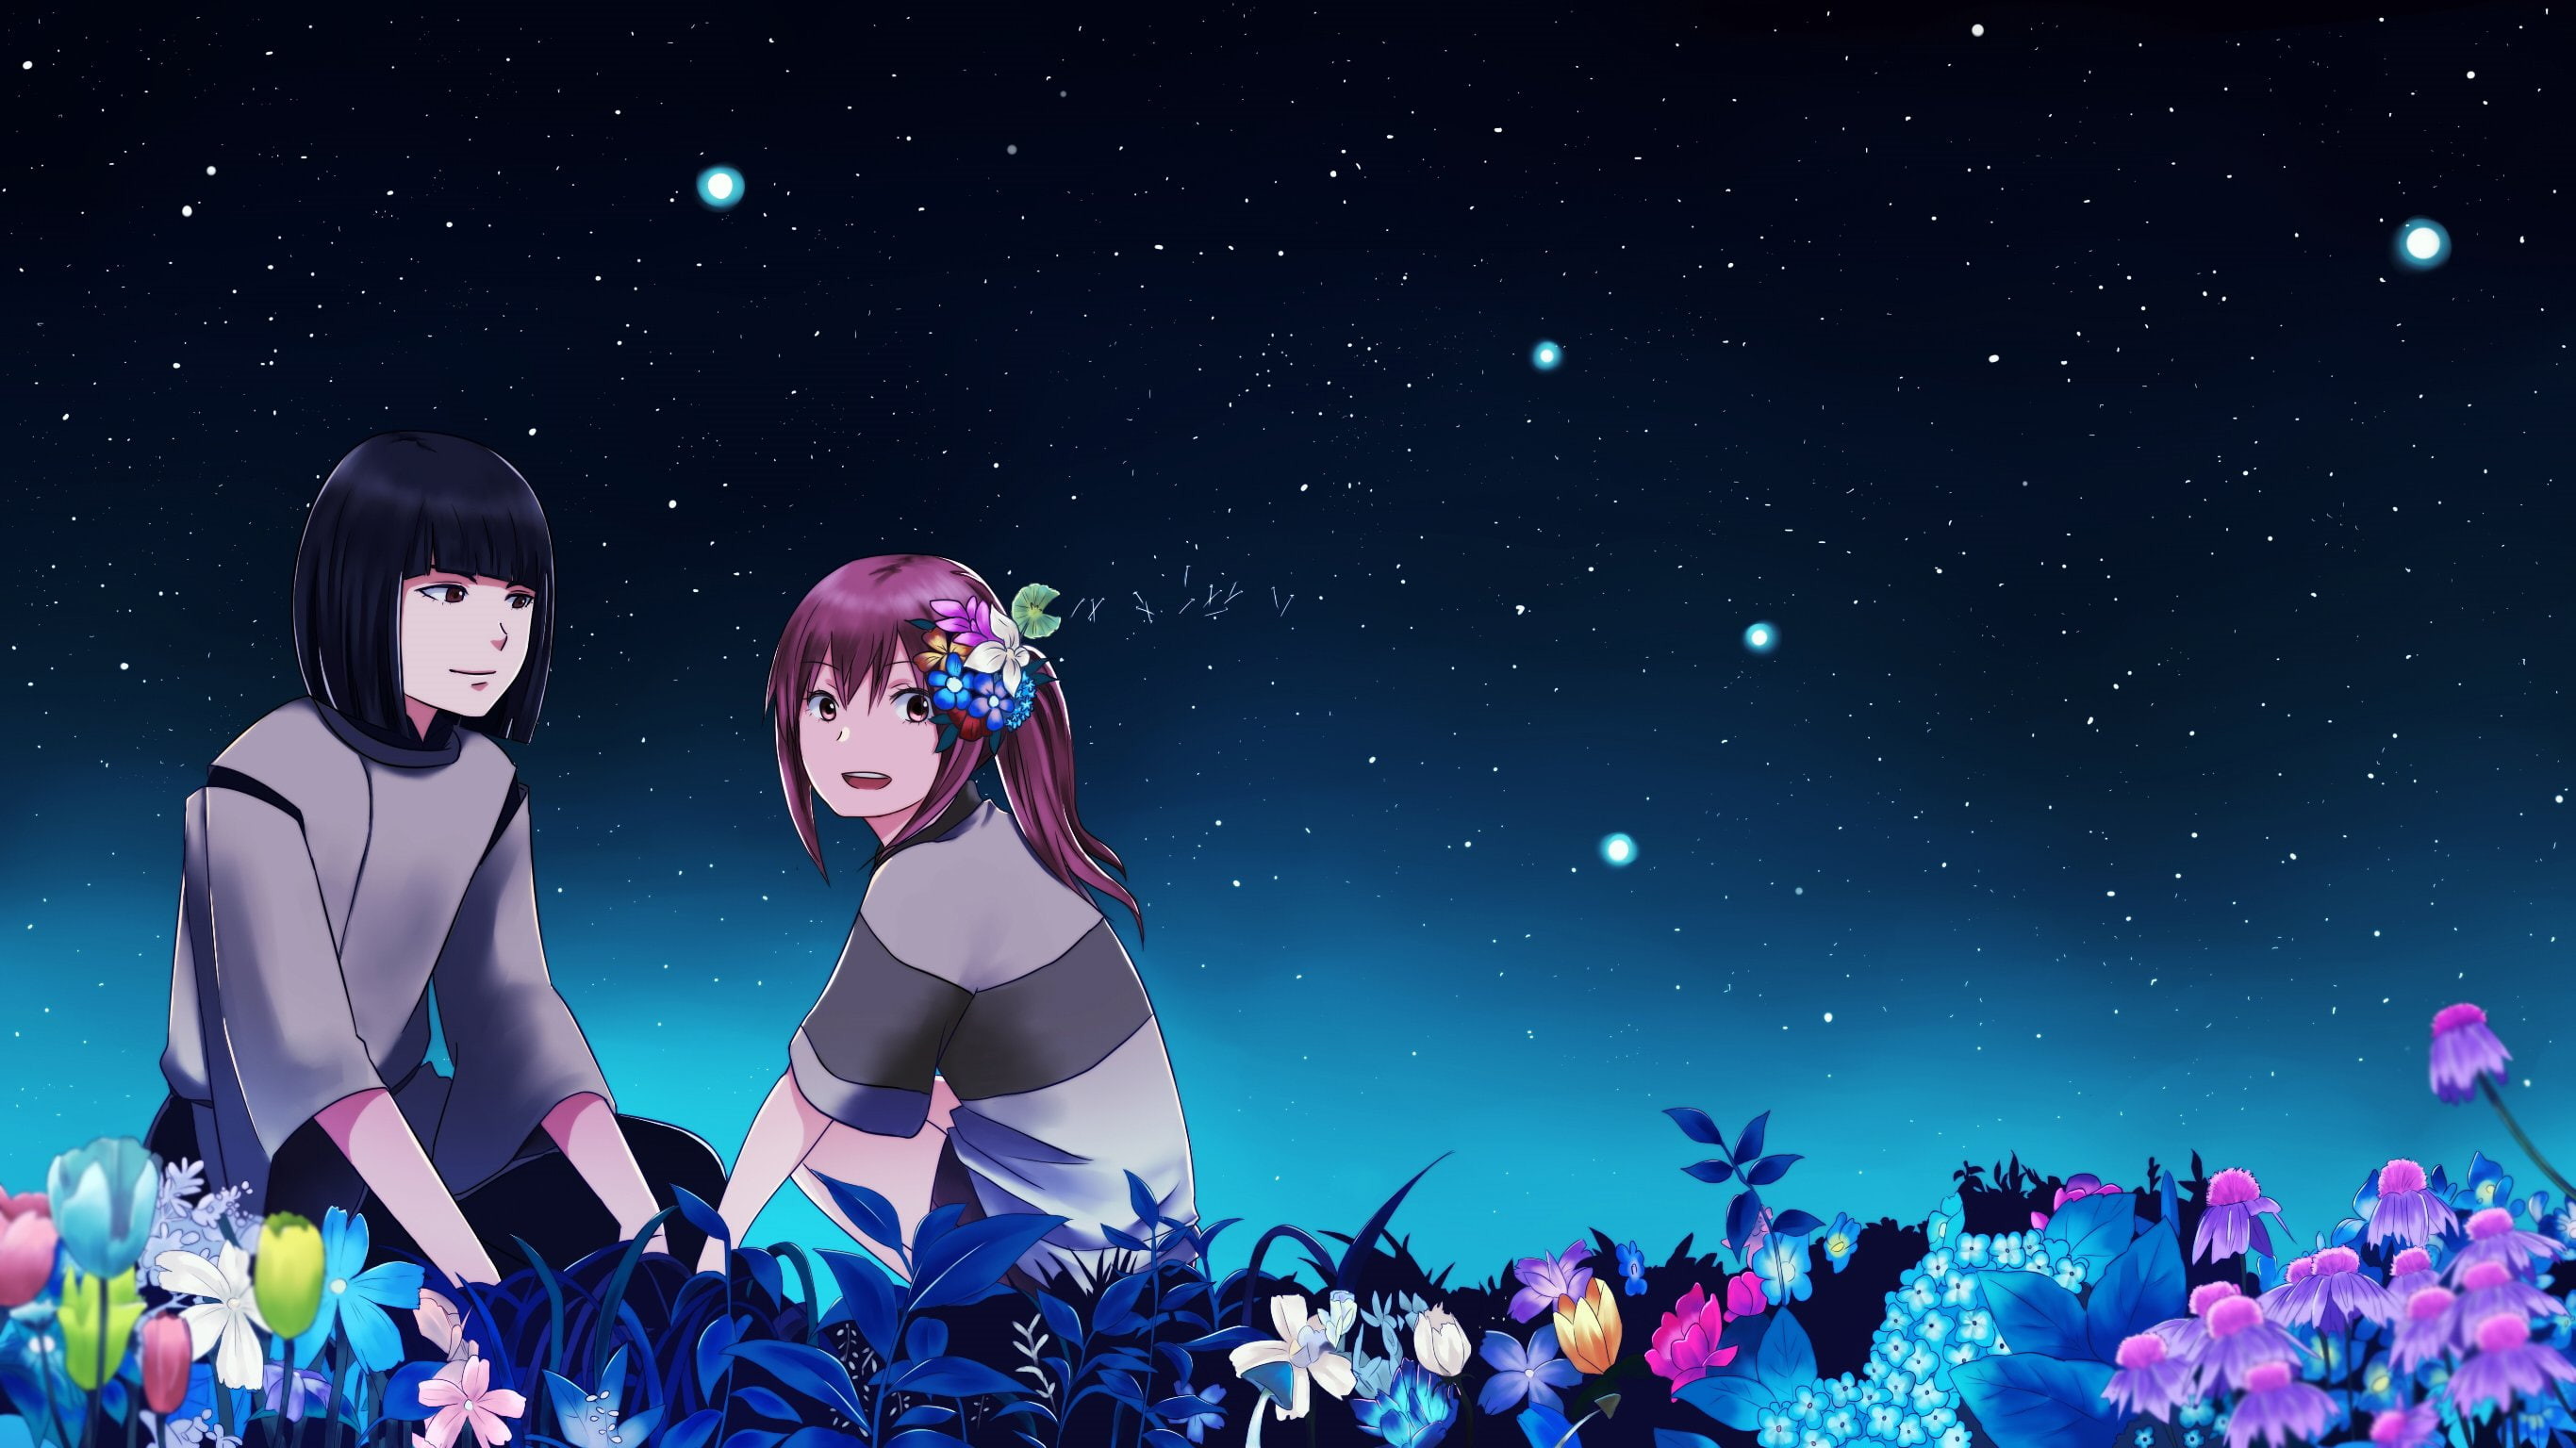 2732x1536 away, chihiro, flowers, haku, night, ogino, spirited, stars